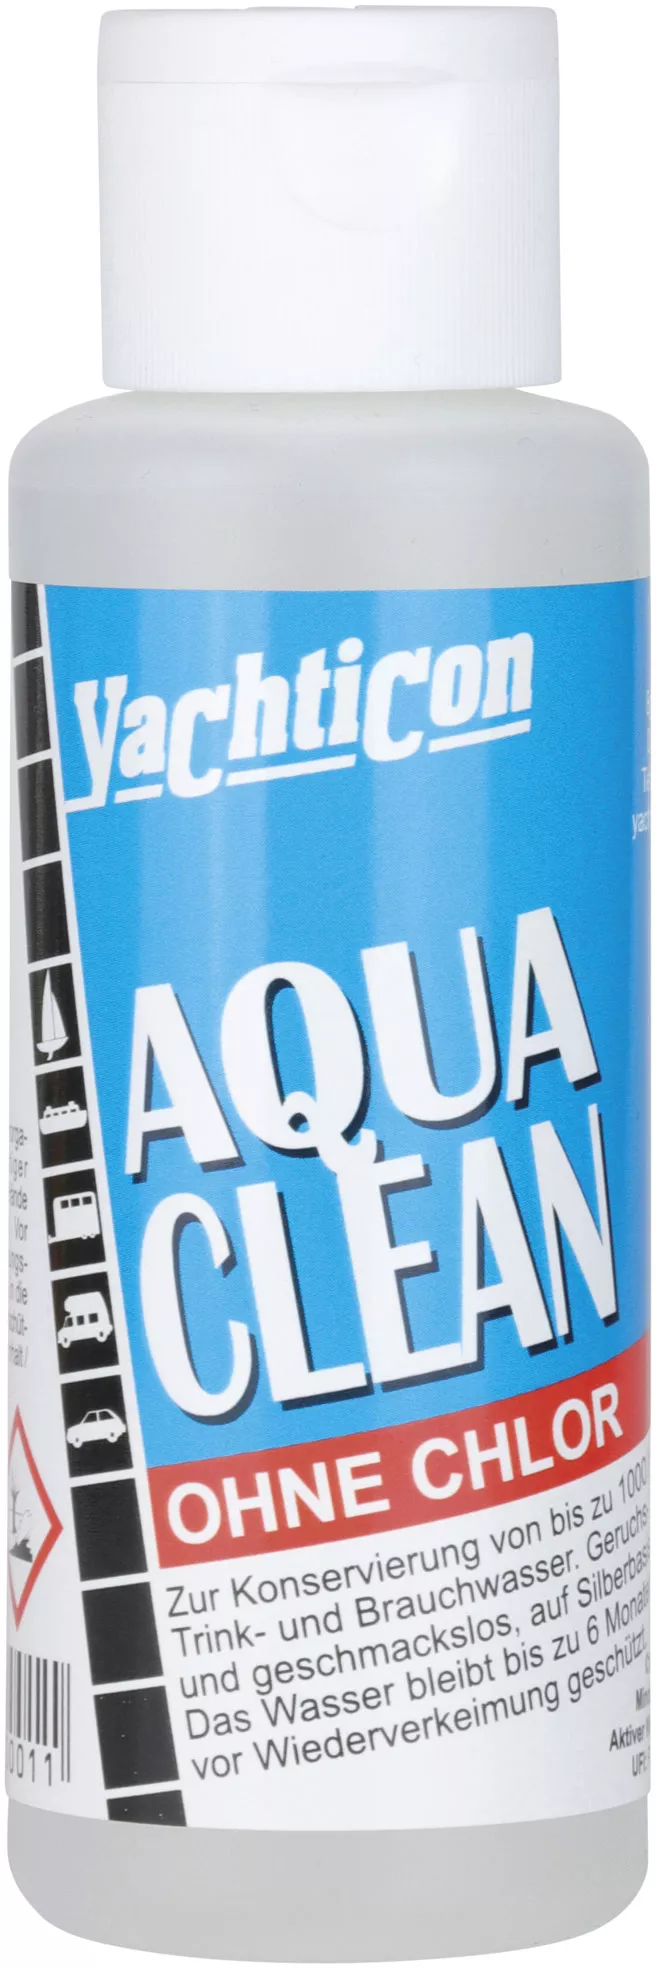 Yachticon Aqua Clean flüssig Wasseraufbereitung